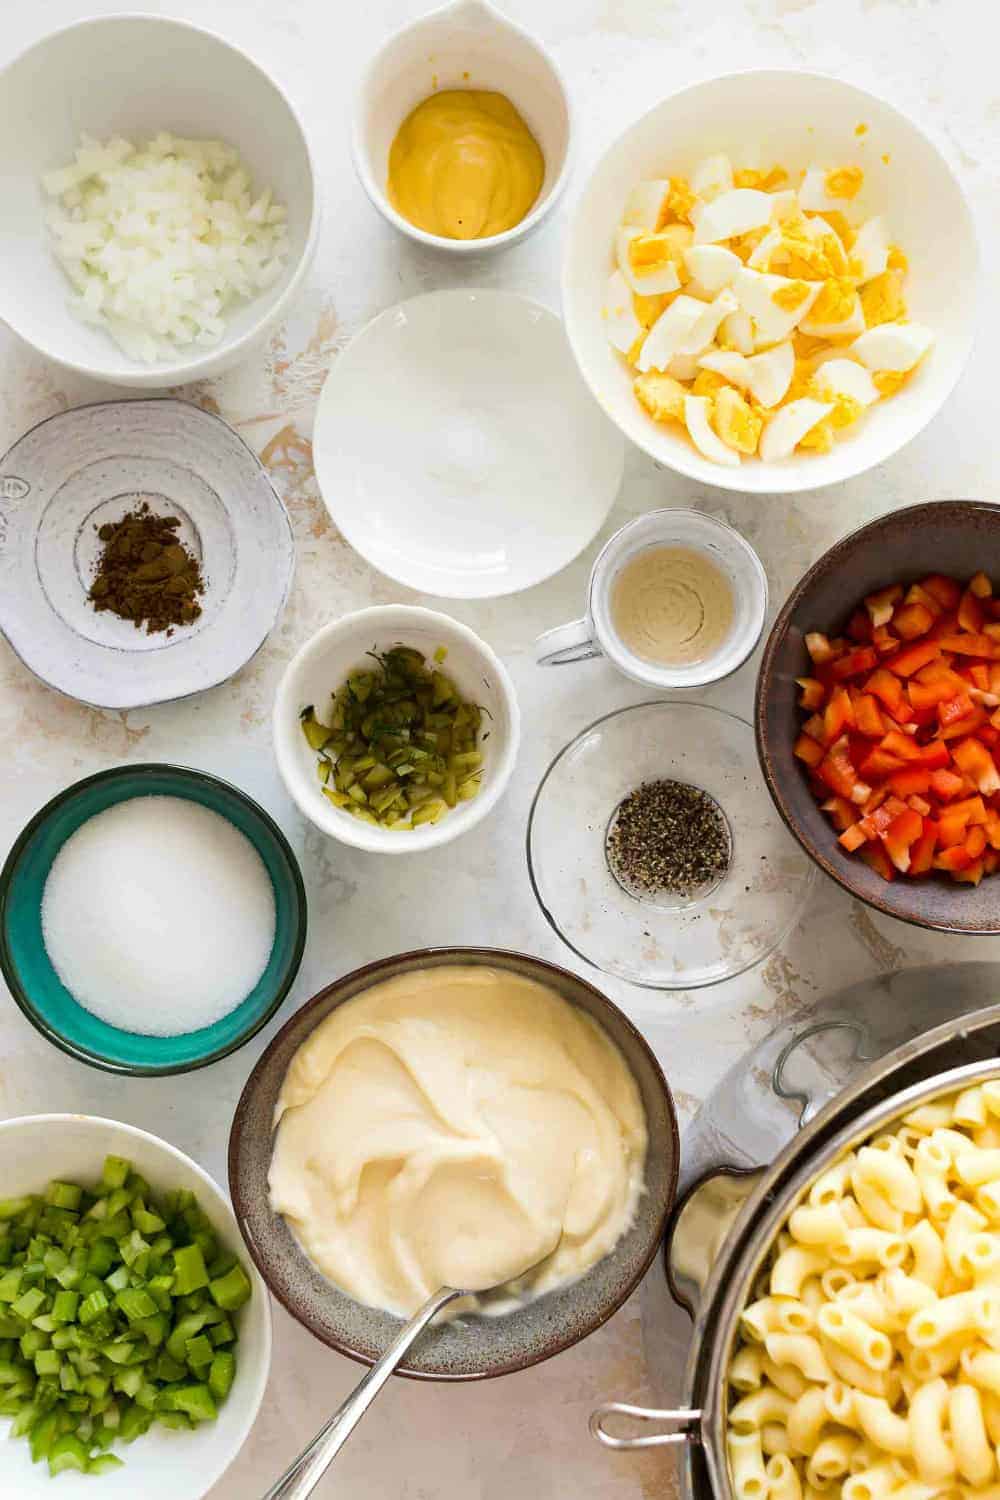 Ingredients for making macaroni salad